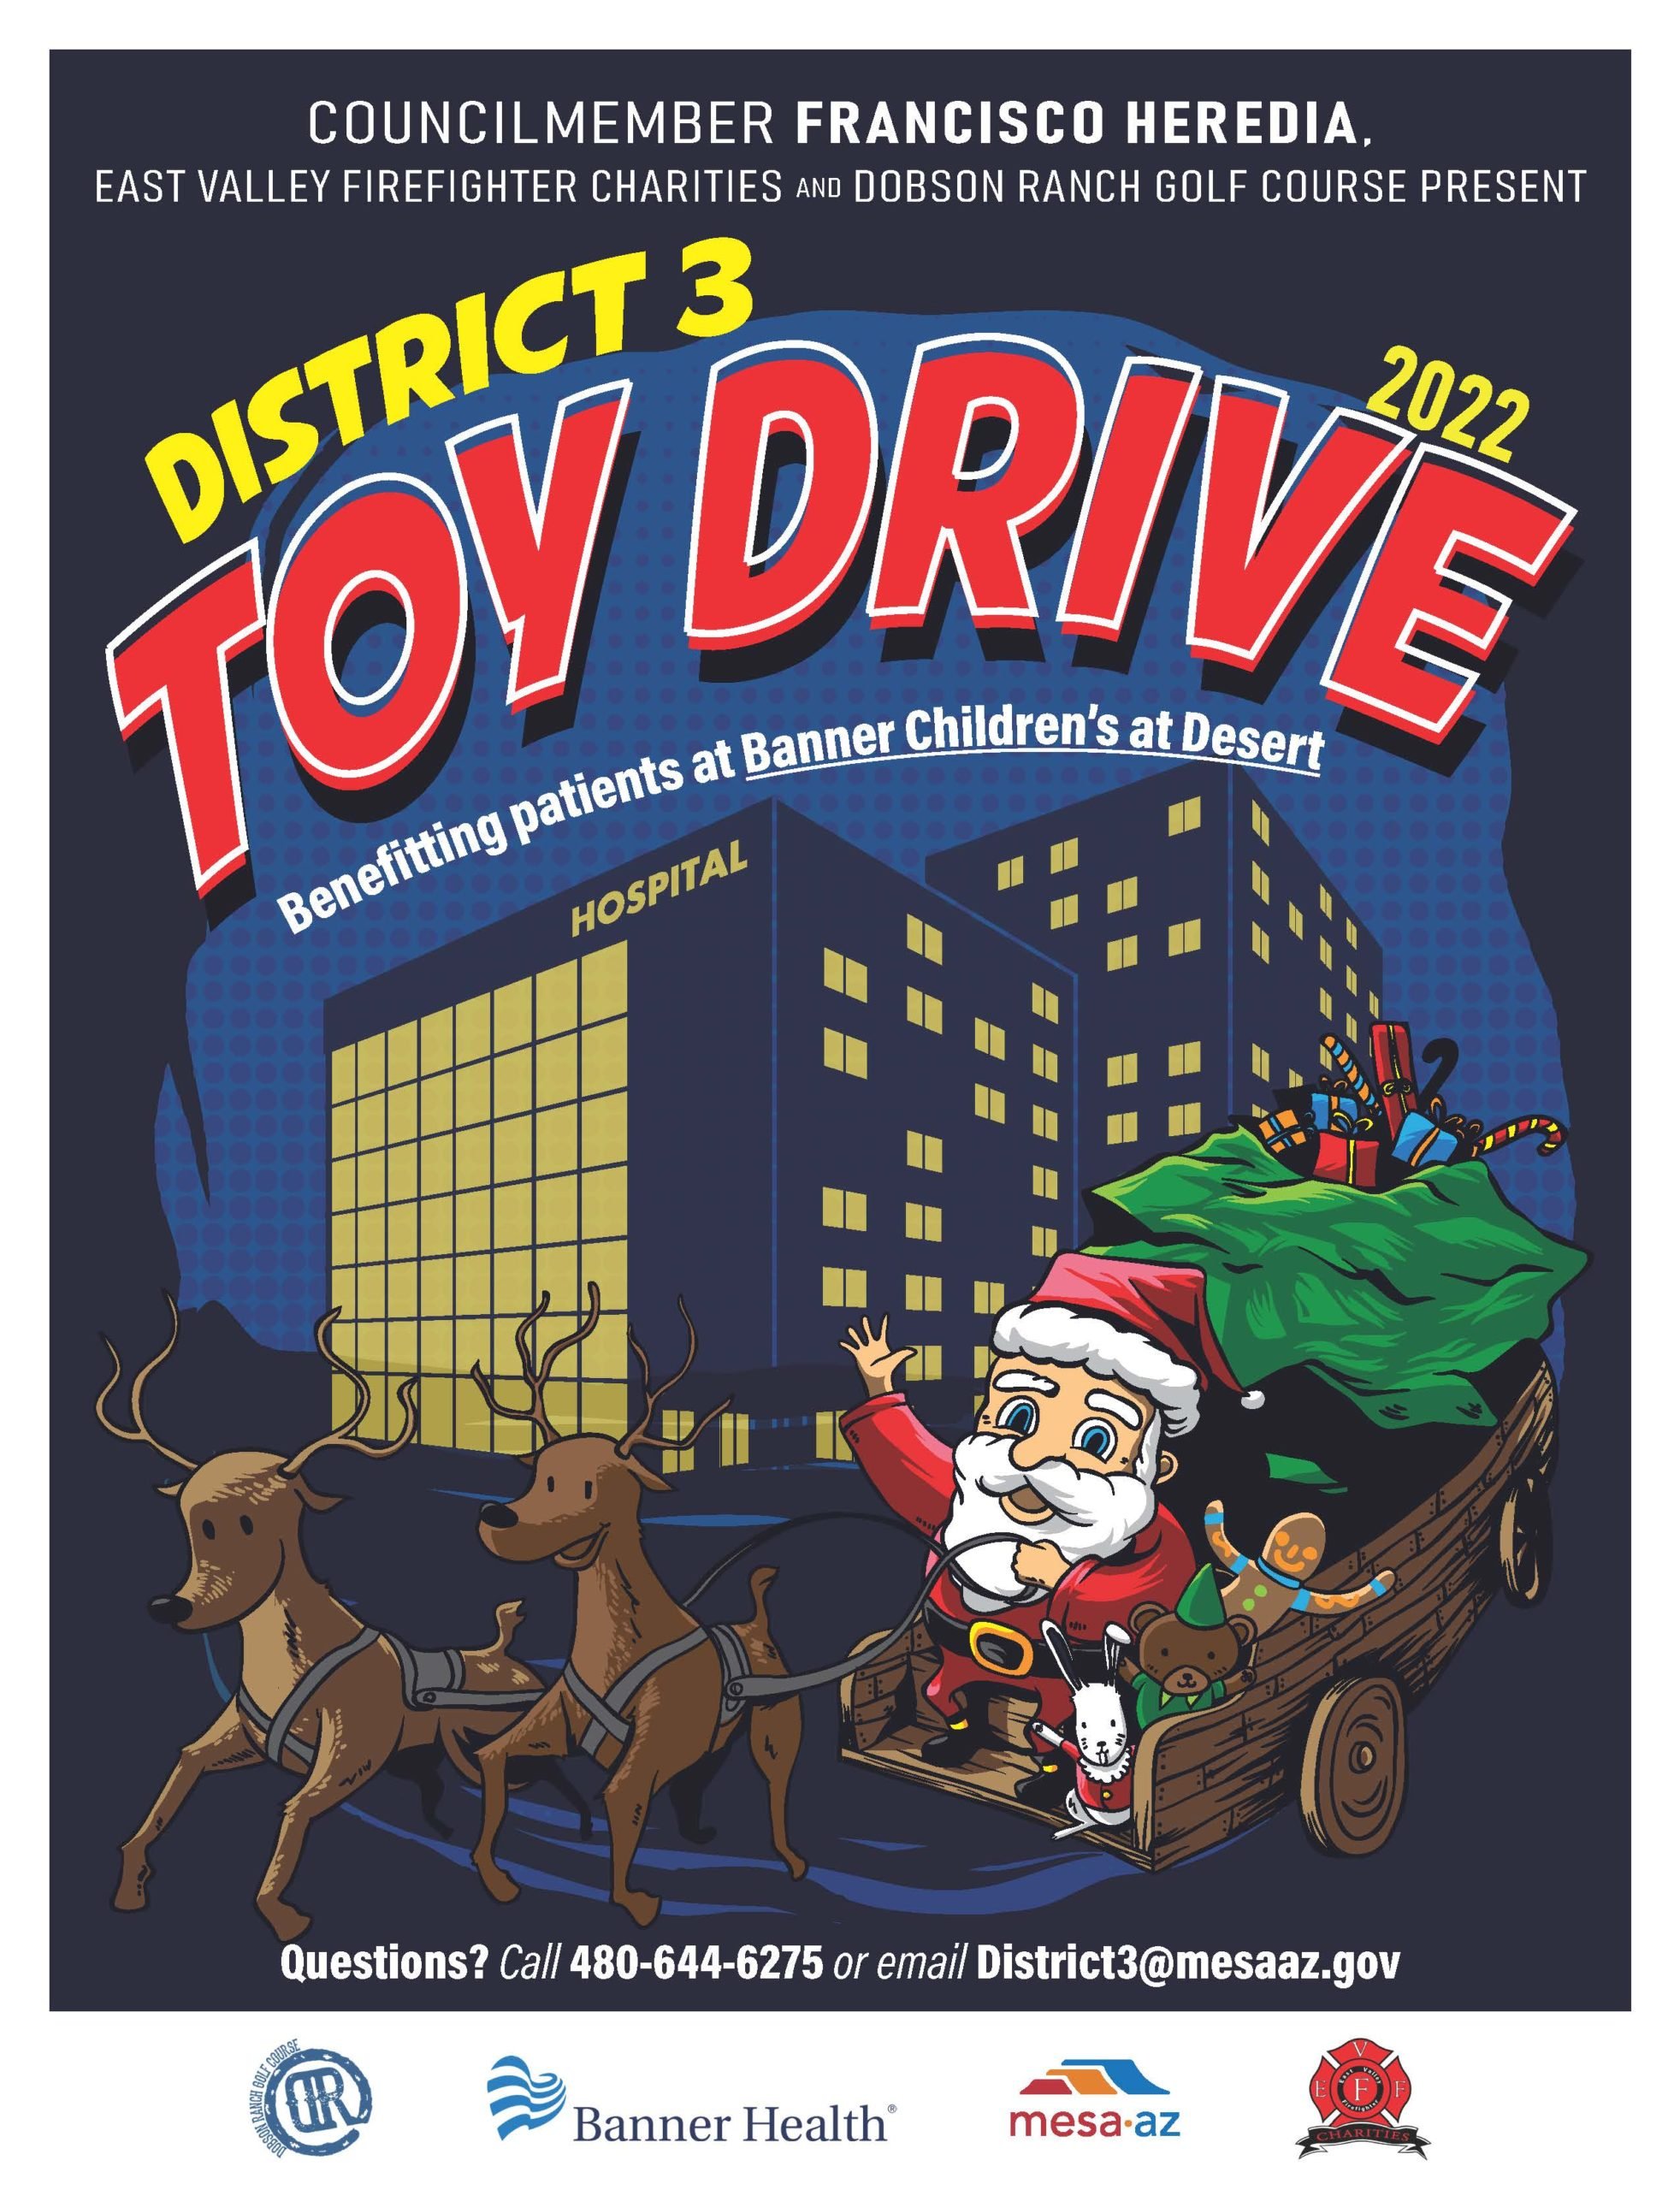 Annual District 3 Toy Drive @ La Casita Recreation Center